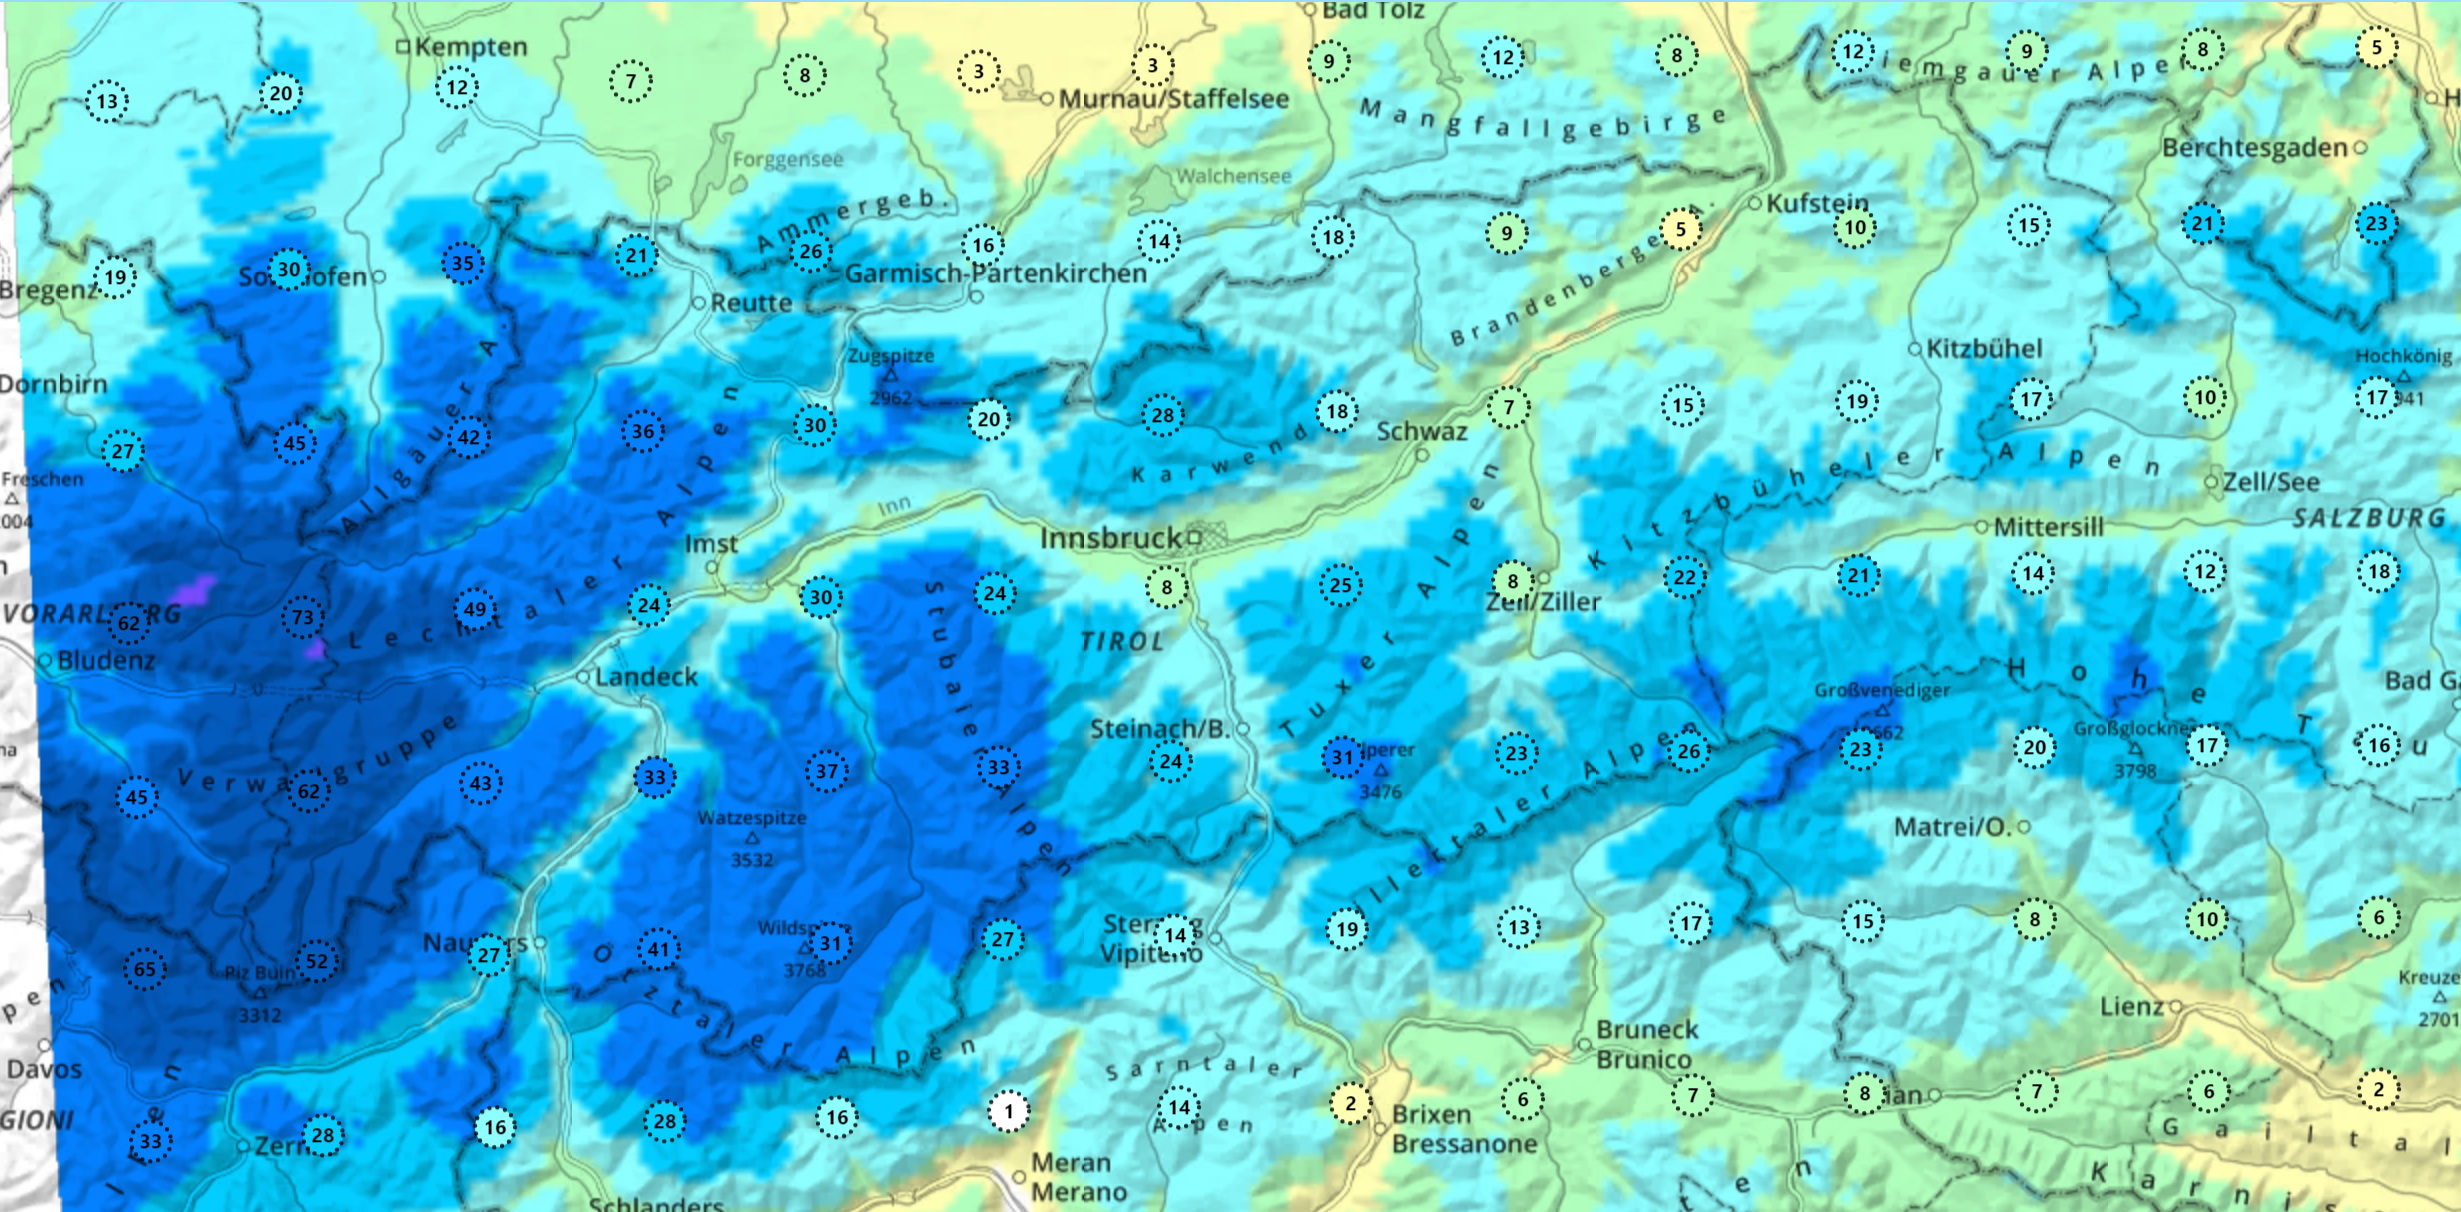 Nyugat-Ausztria: a Tiroli Lavina Intézet számításai a hómennyiségre centiméterben